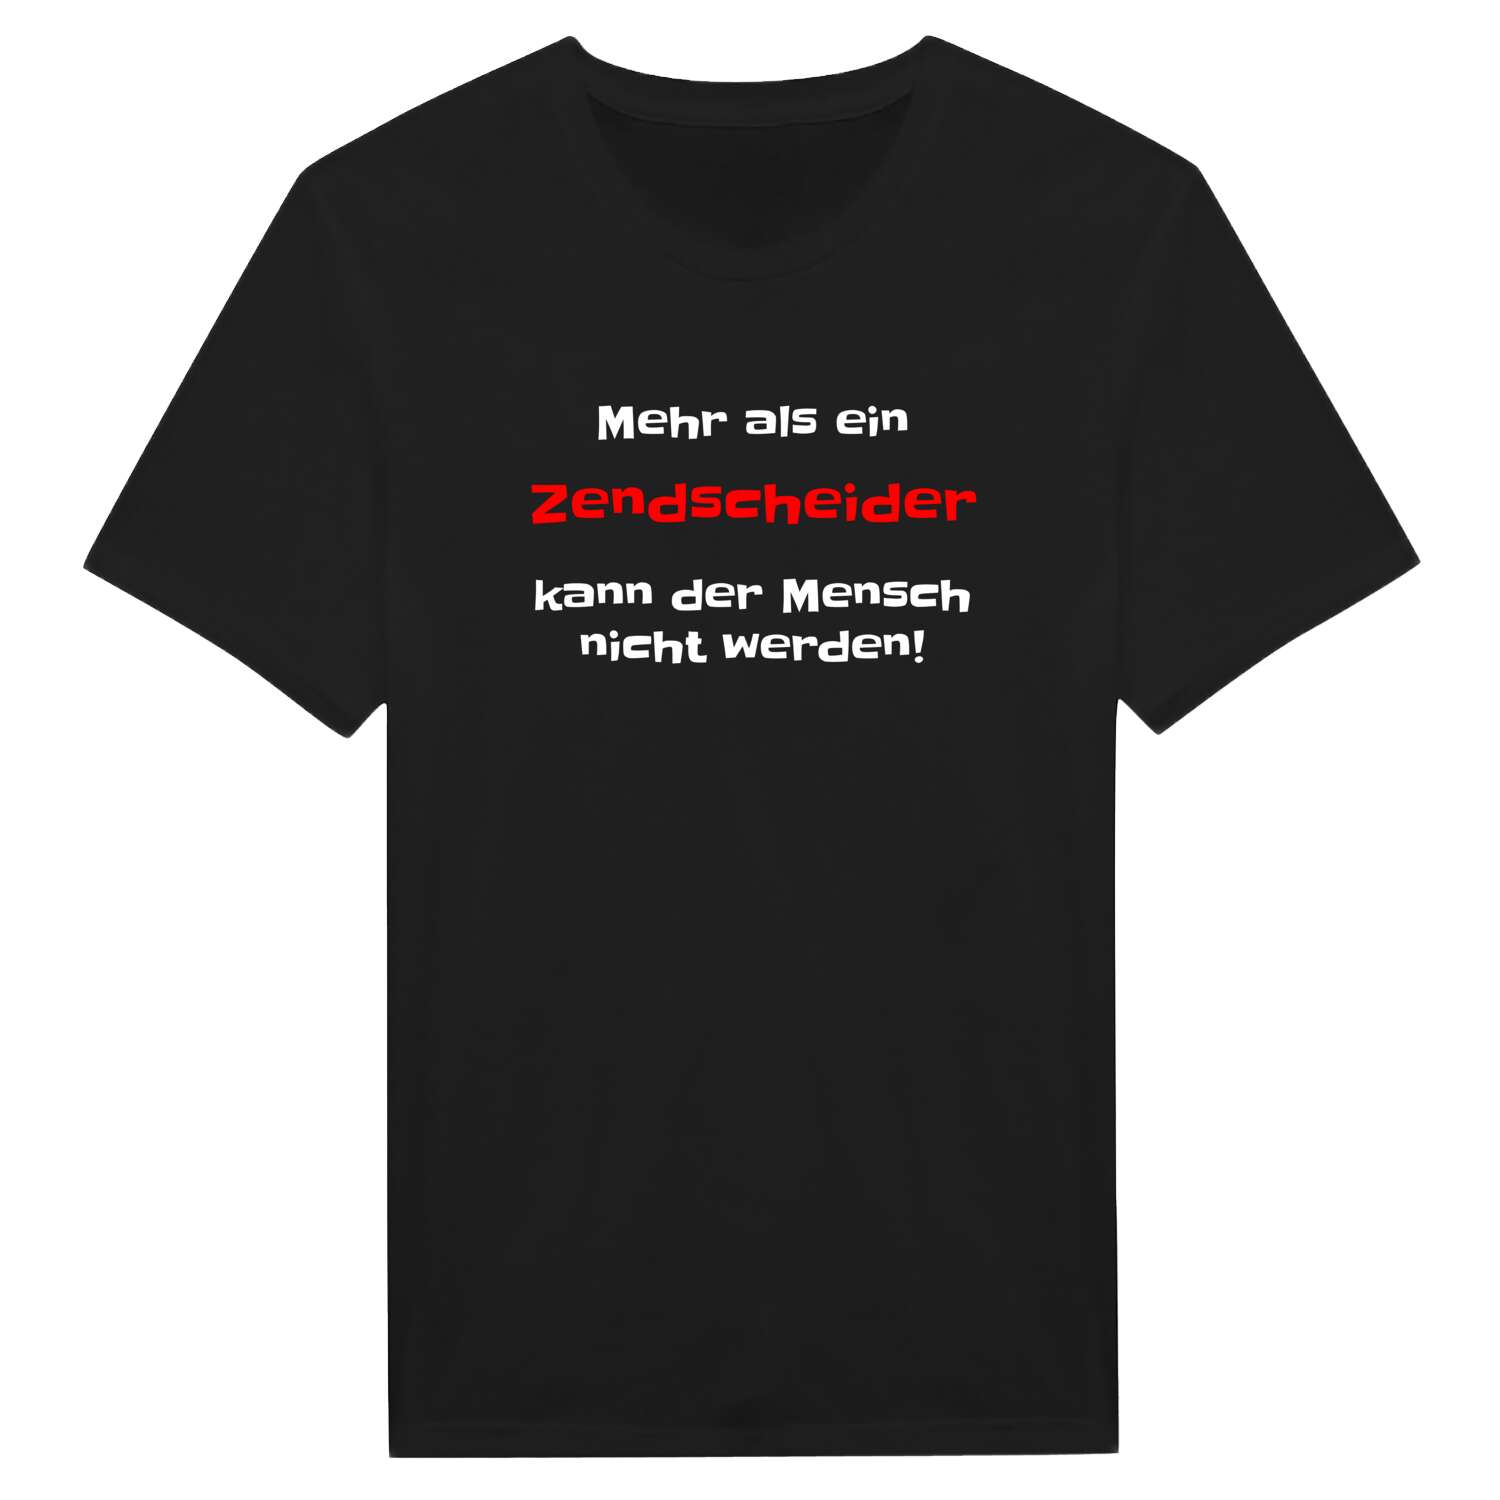 Zendscheid T-Shirt »Mehr als ein«